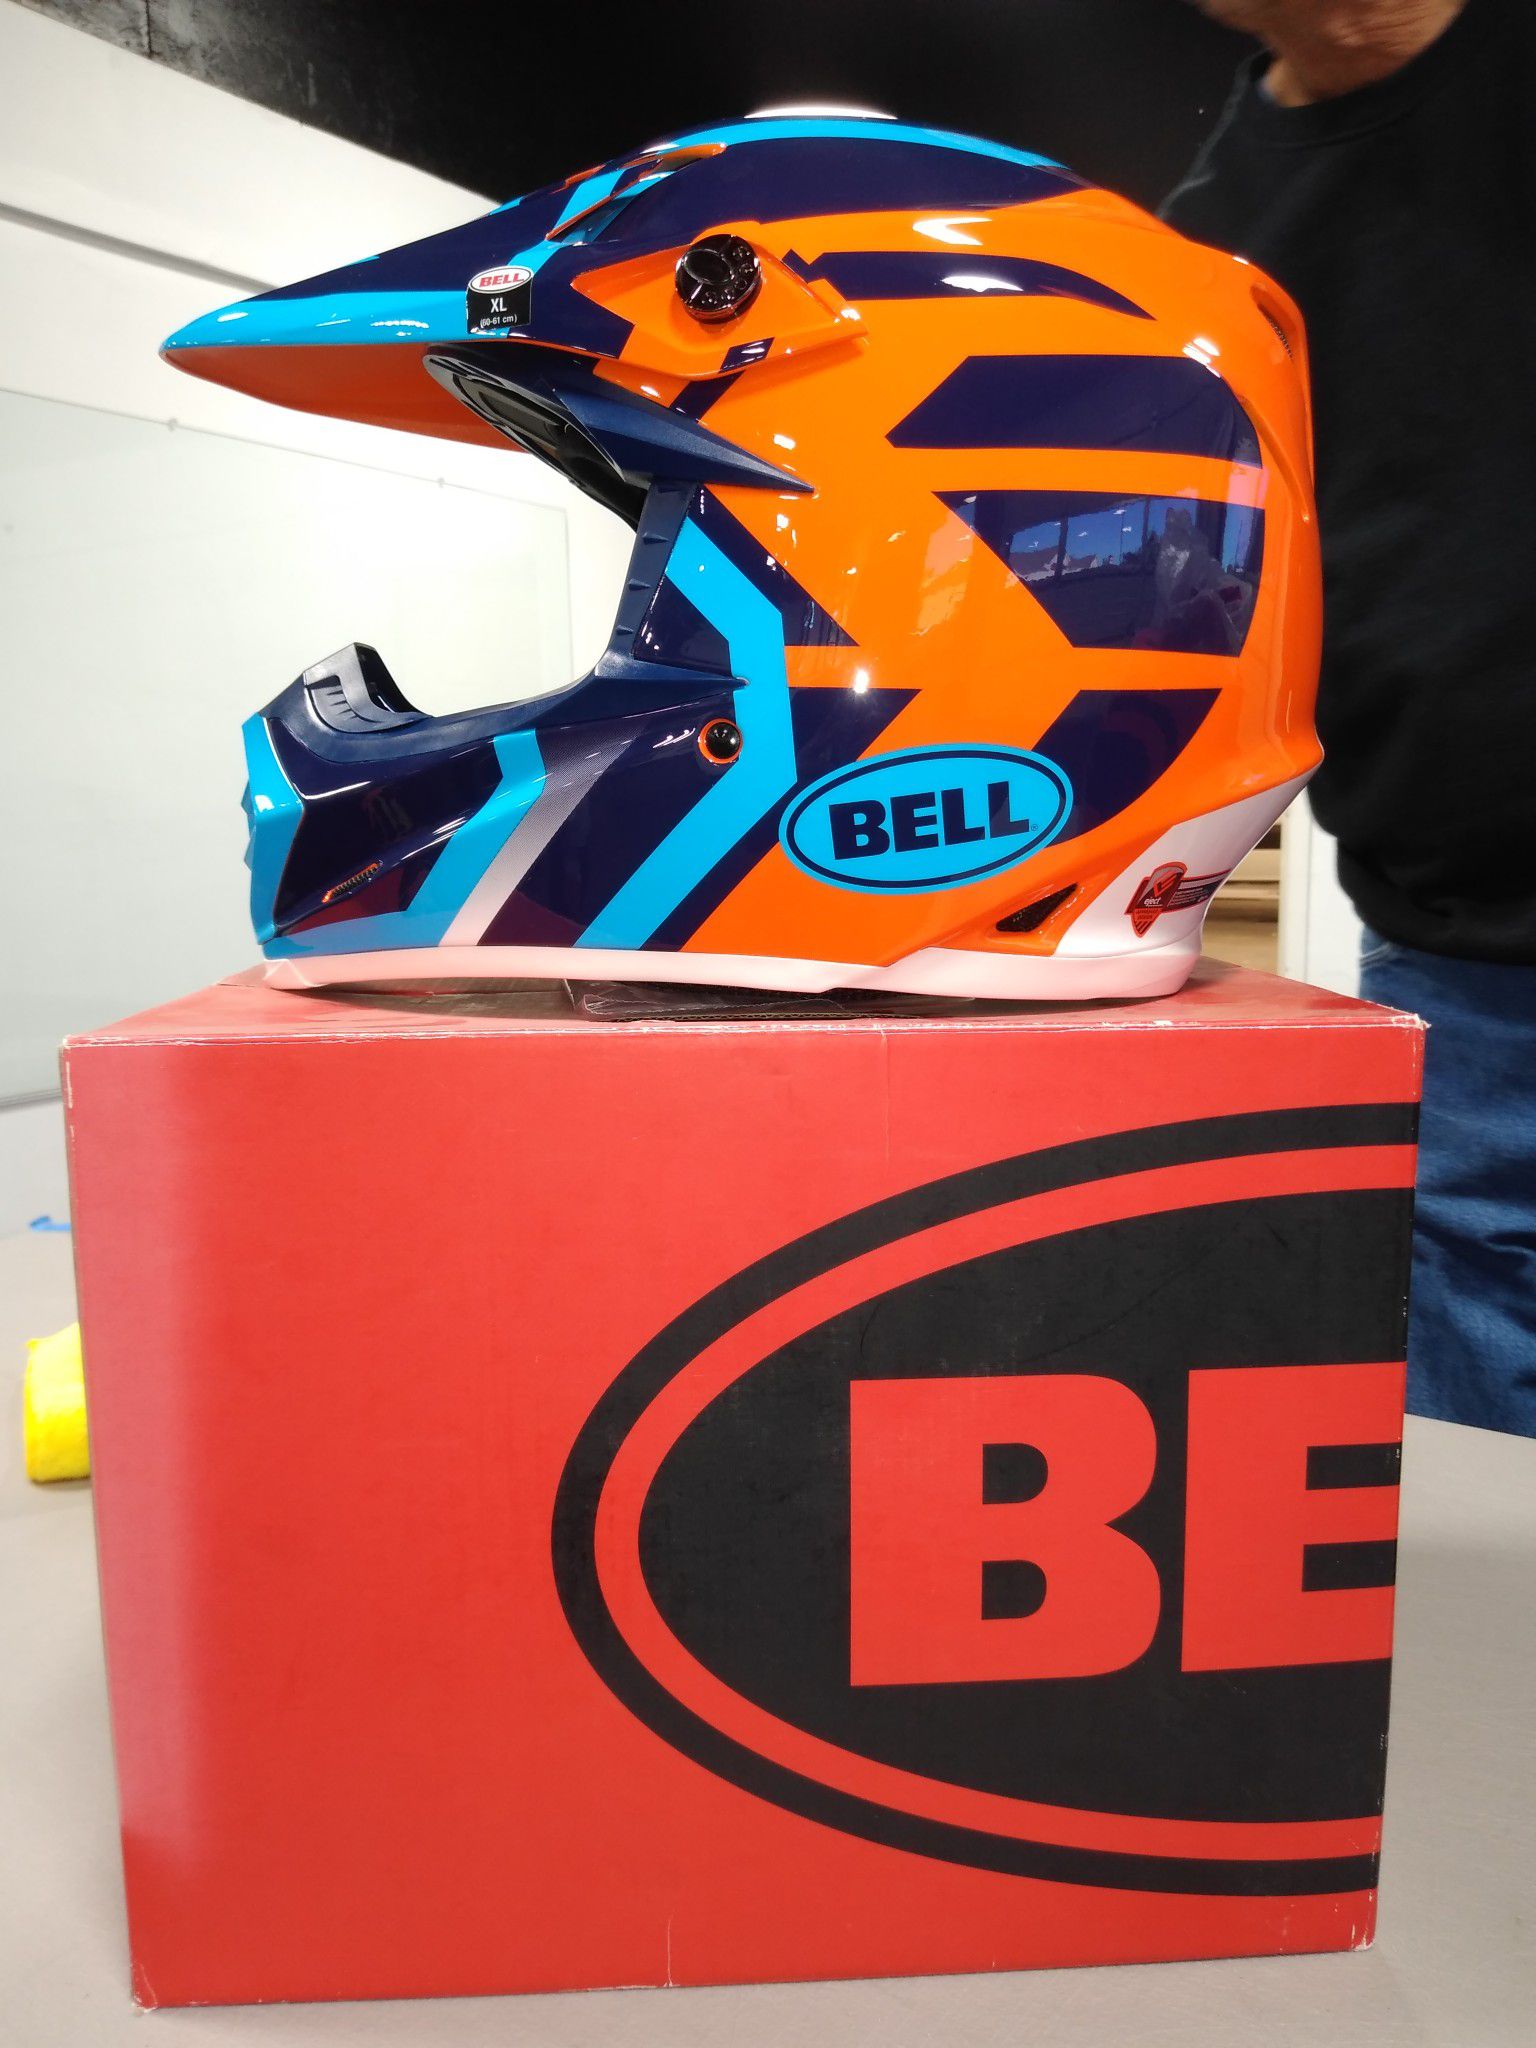 Bell motorcycle helmets